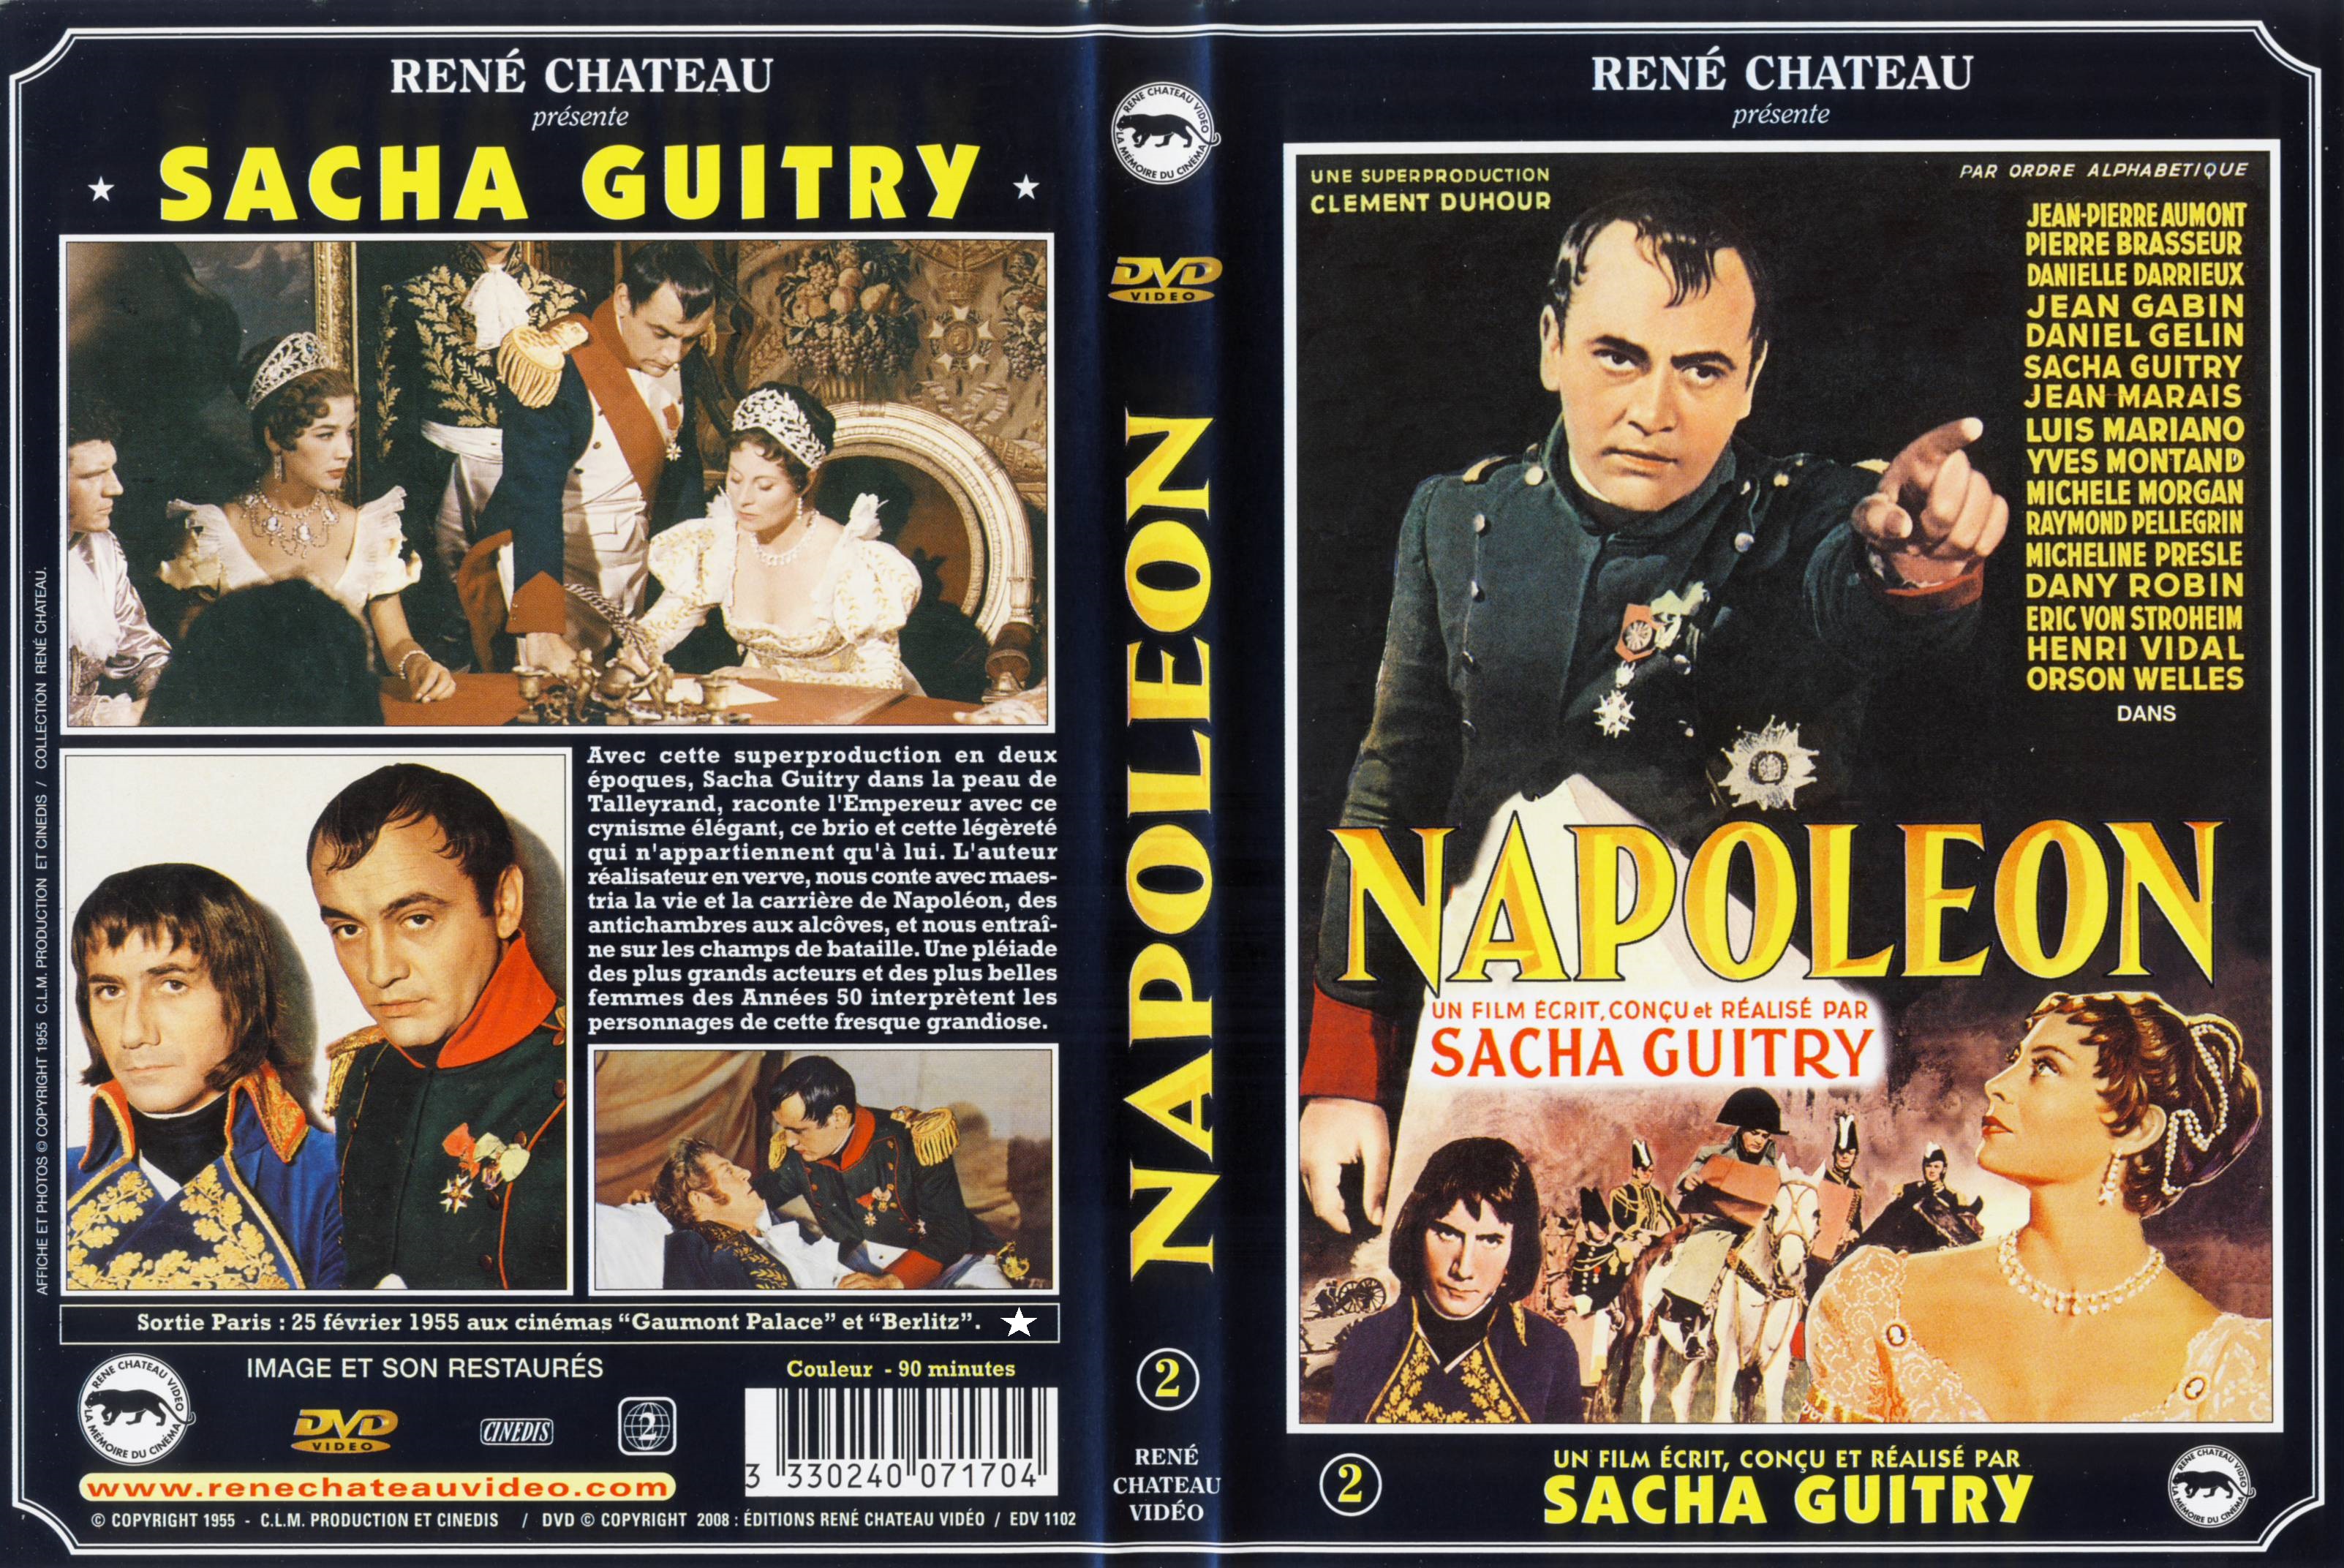 Jaquette DVD Napolon 2me poque